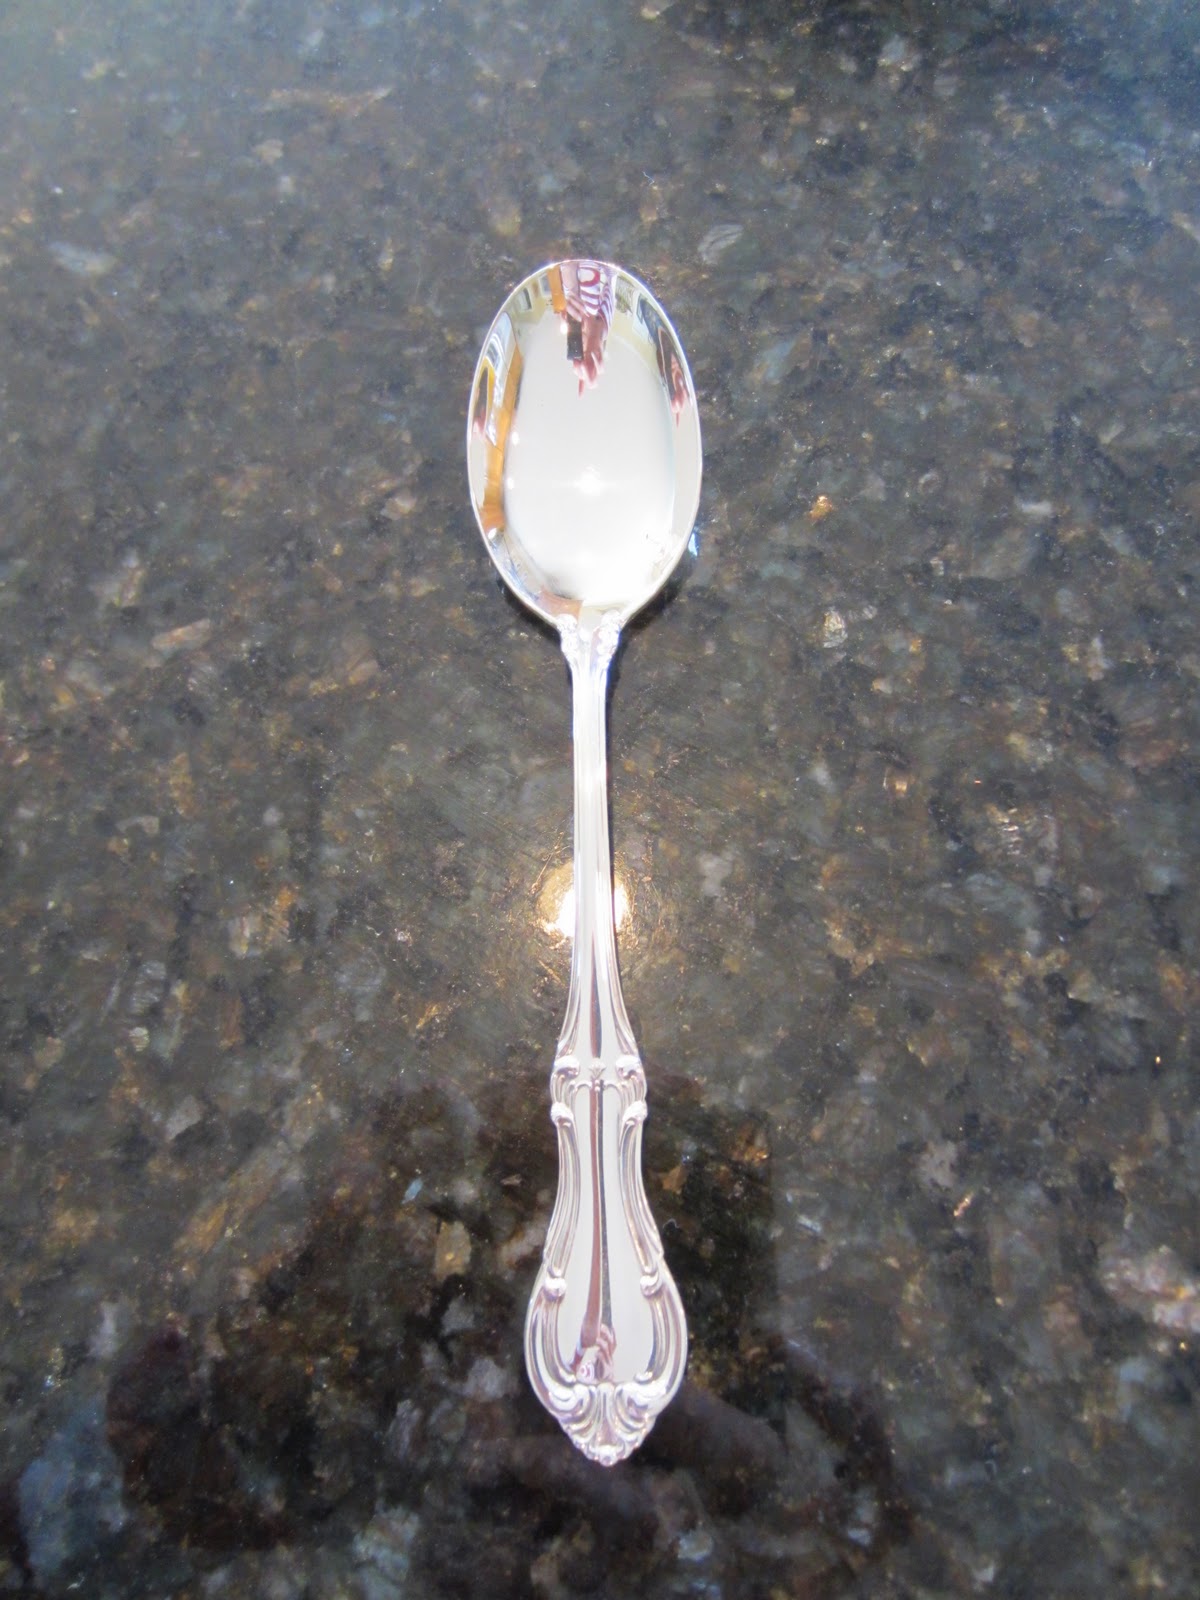 shiny silver spoon